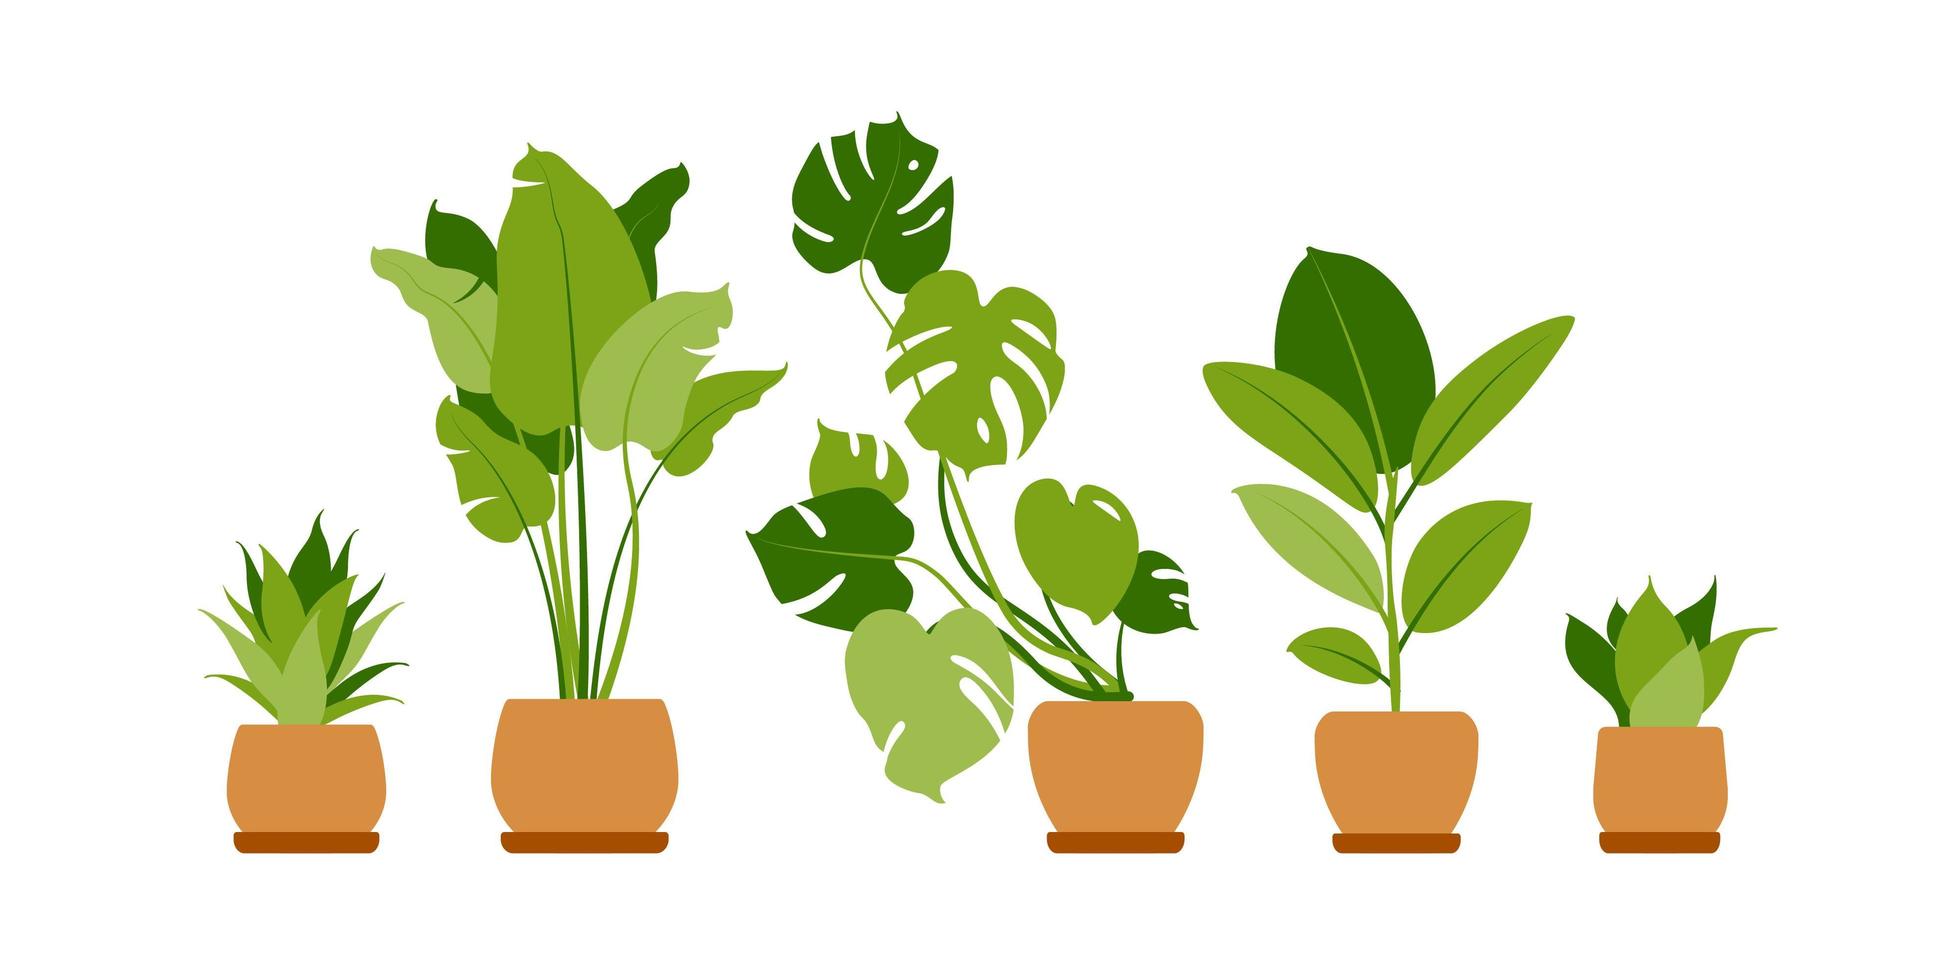 collectie huisplanten. potplanten geïsoleerd op wit. vector set groene tropische planten. trendy woondecoratie met kamerplanten, plantenbakken, cactussen, tropische bladeren. vlak.